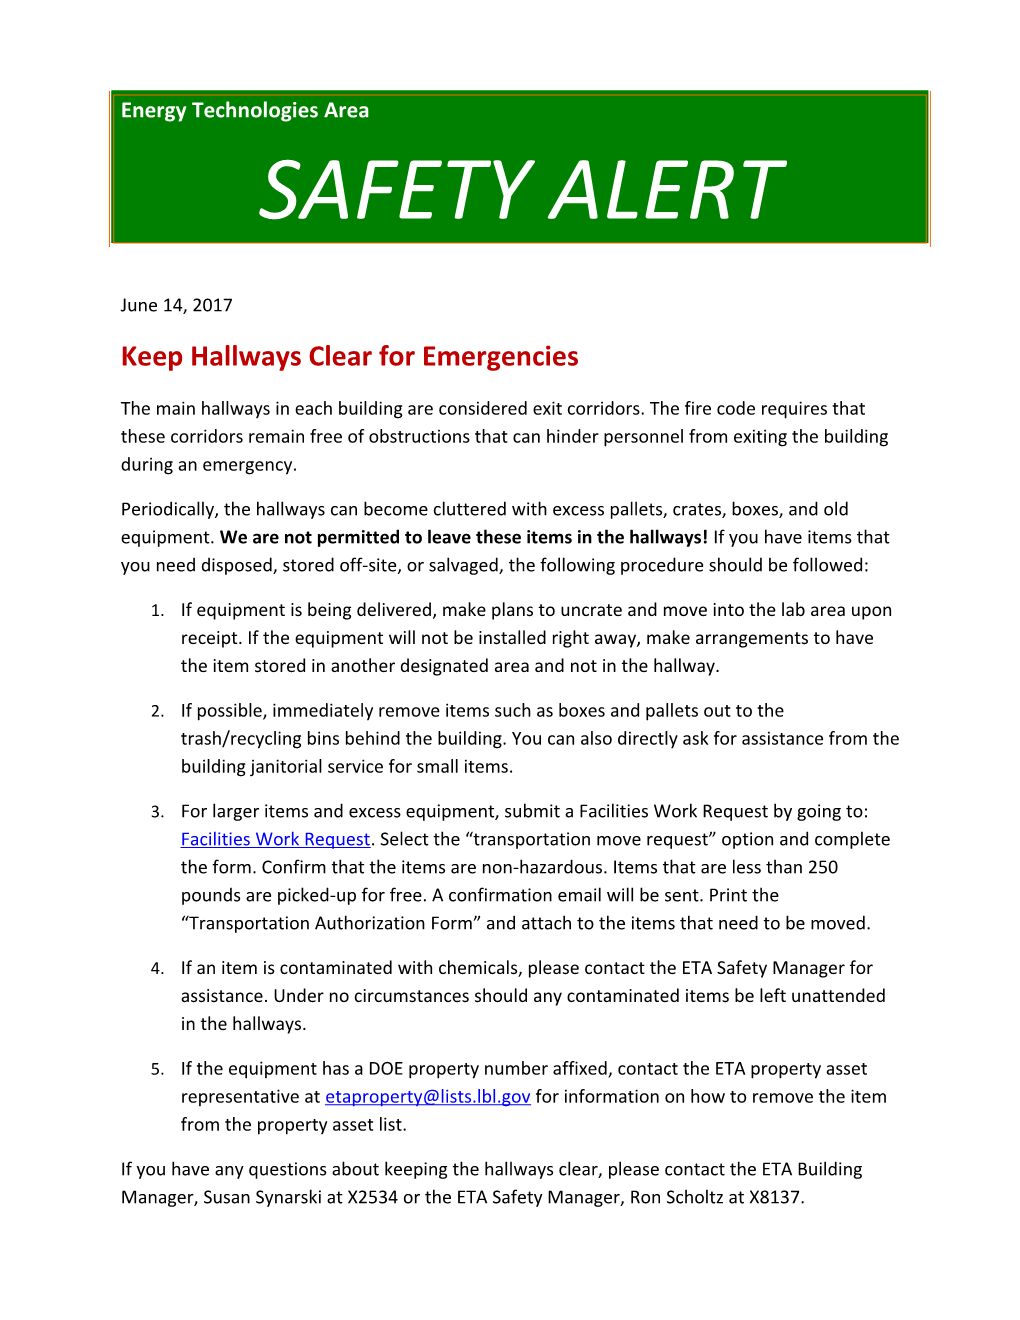 Keep Hallways Clear for Emergencies